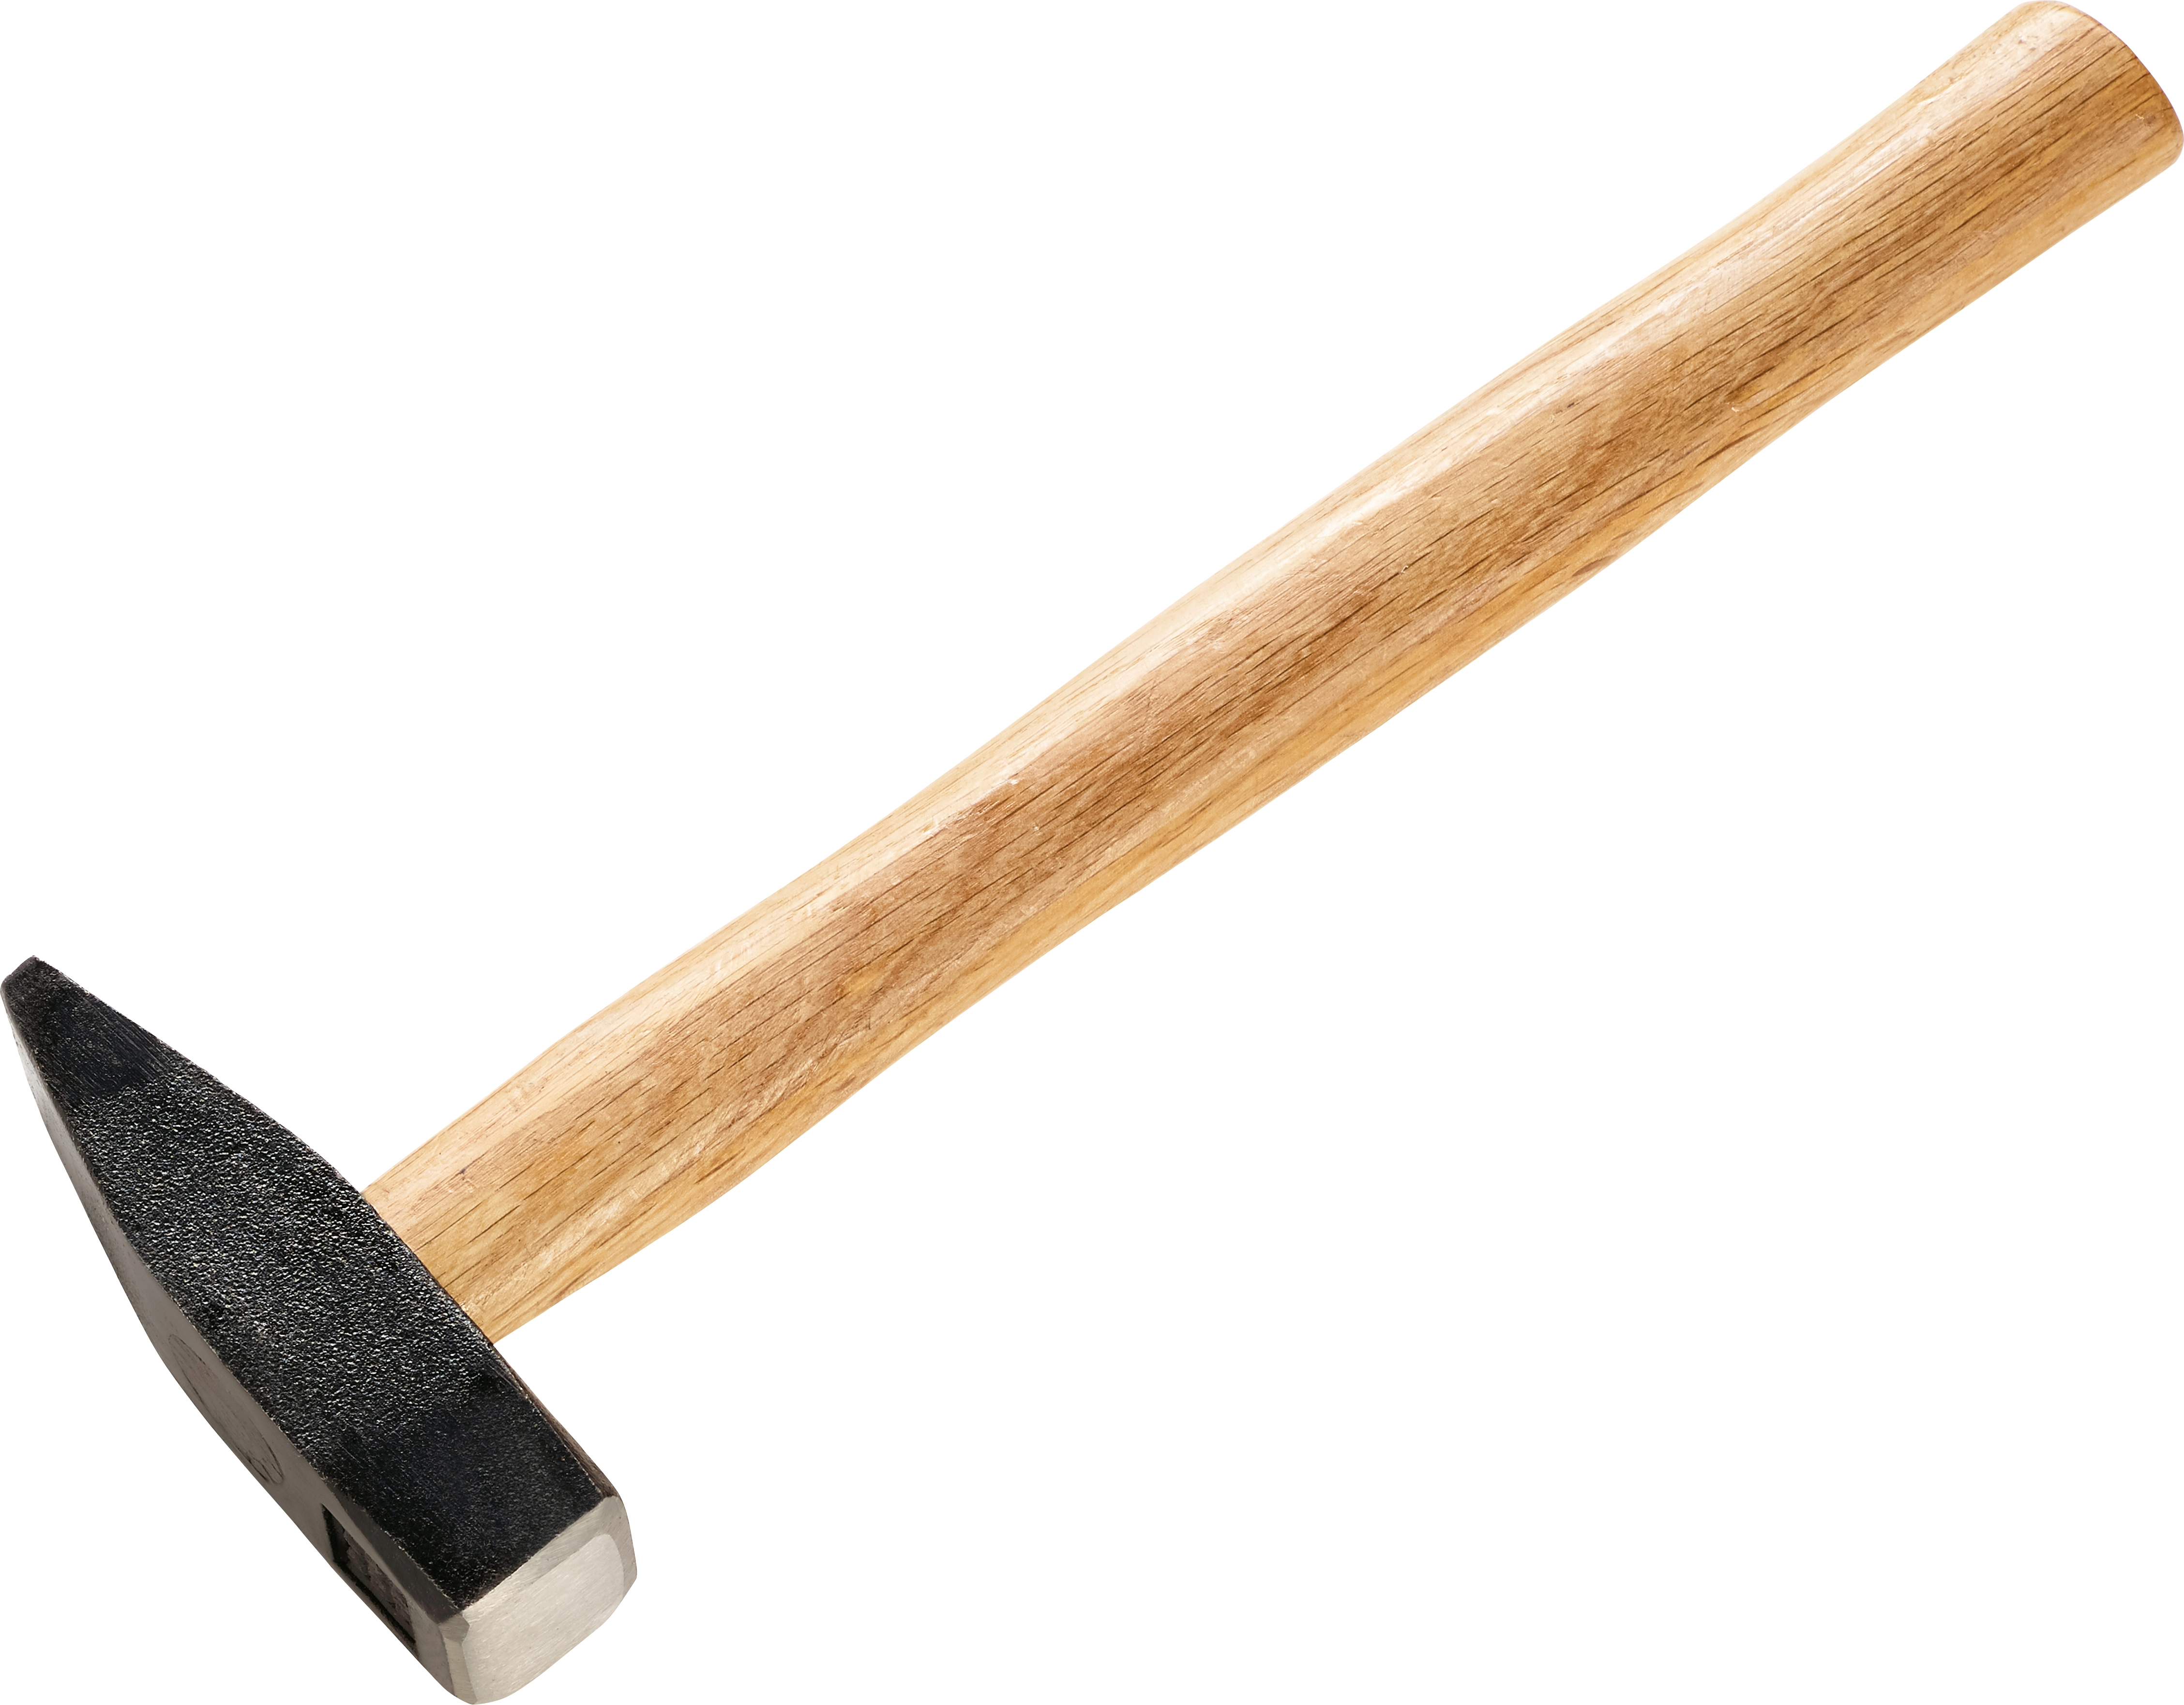 Schlosserhammer 500 g kaufen bei OBI